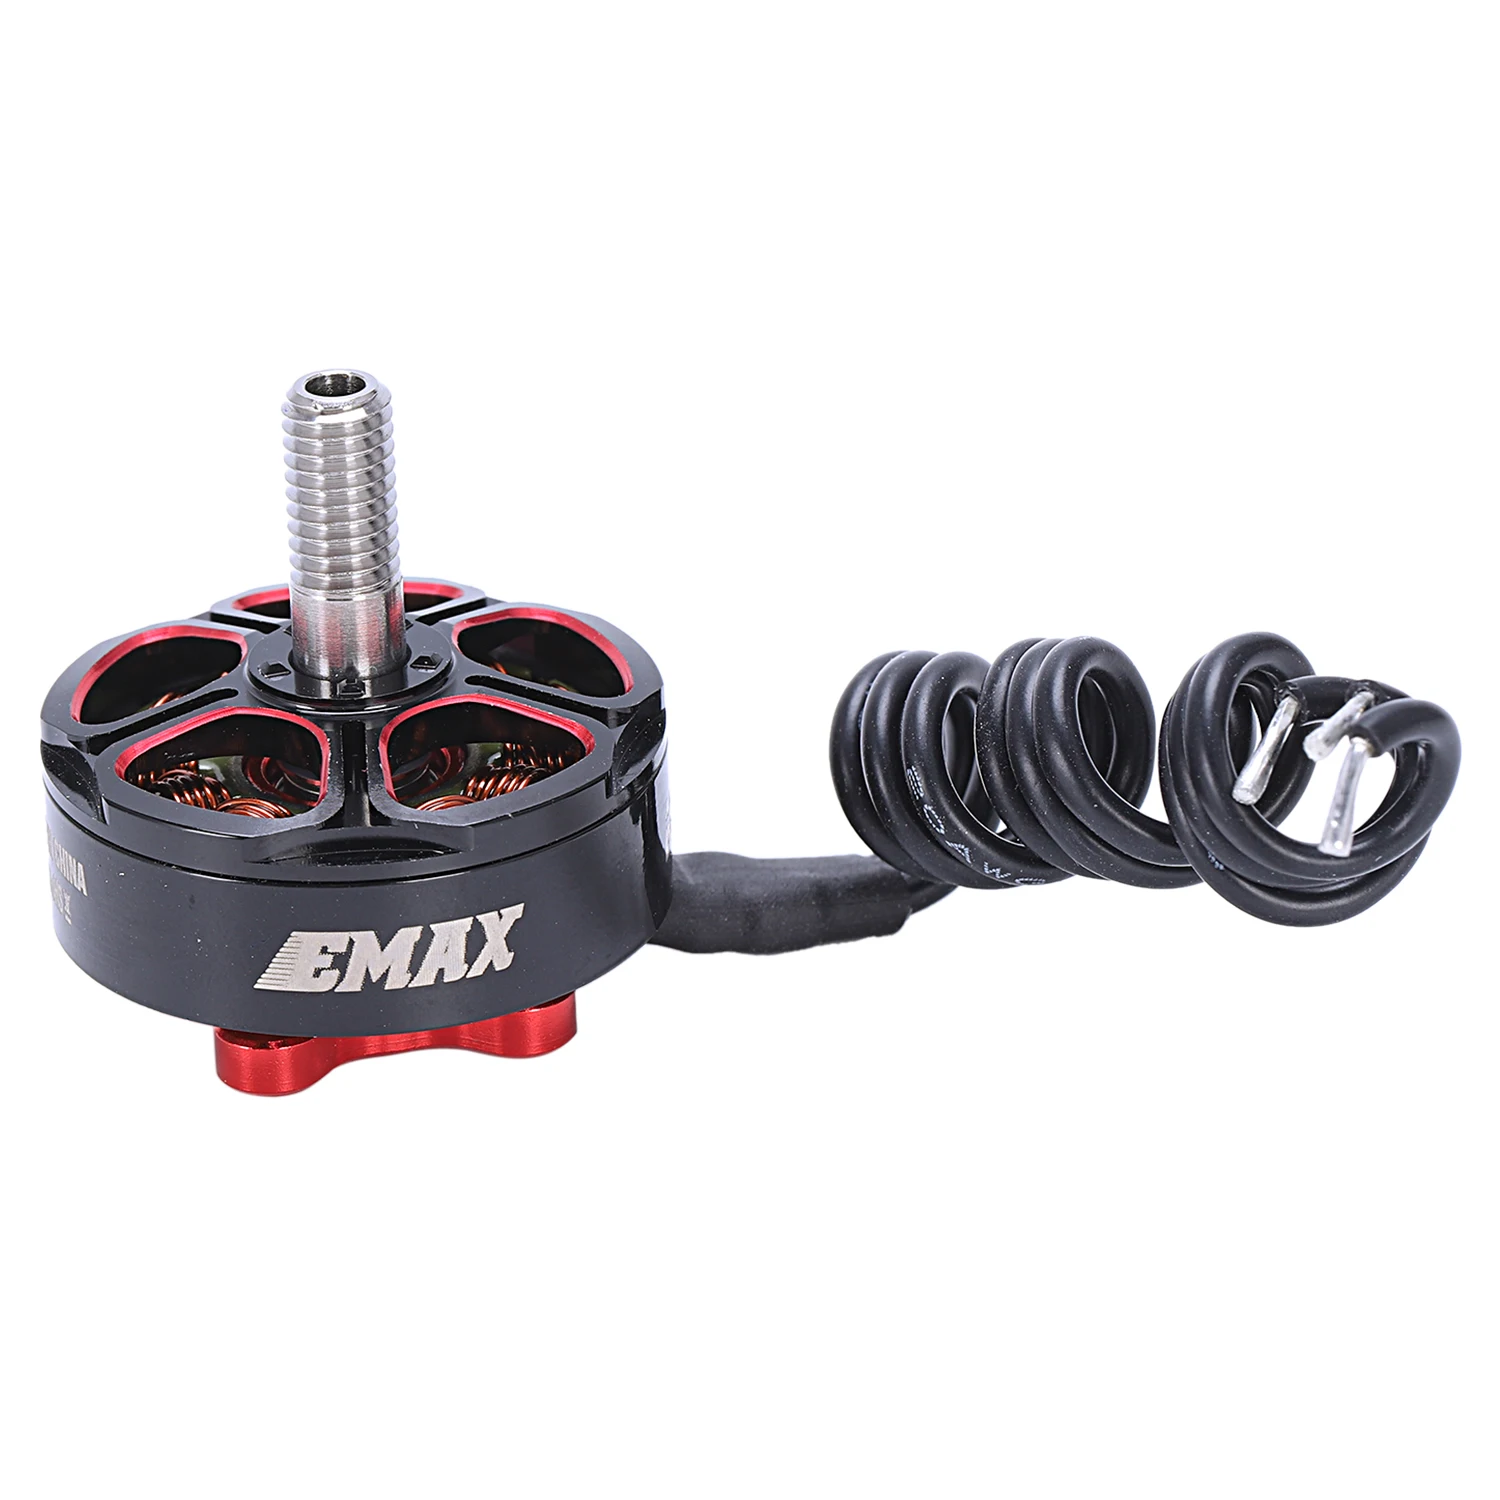 

Emax RSII 2306 Race Spec - Brushless Motor (4-6S)CW Brushless Motor for FPV Quadcopter